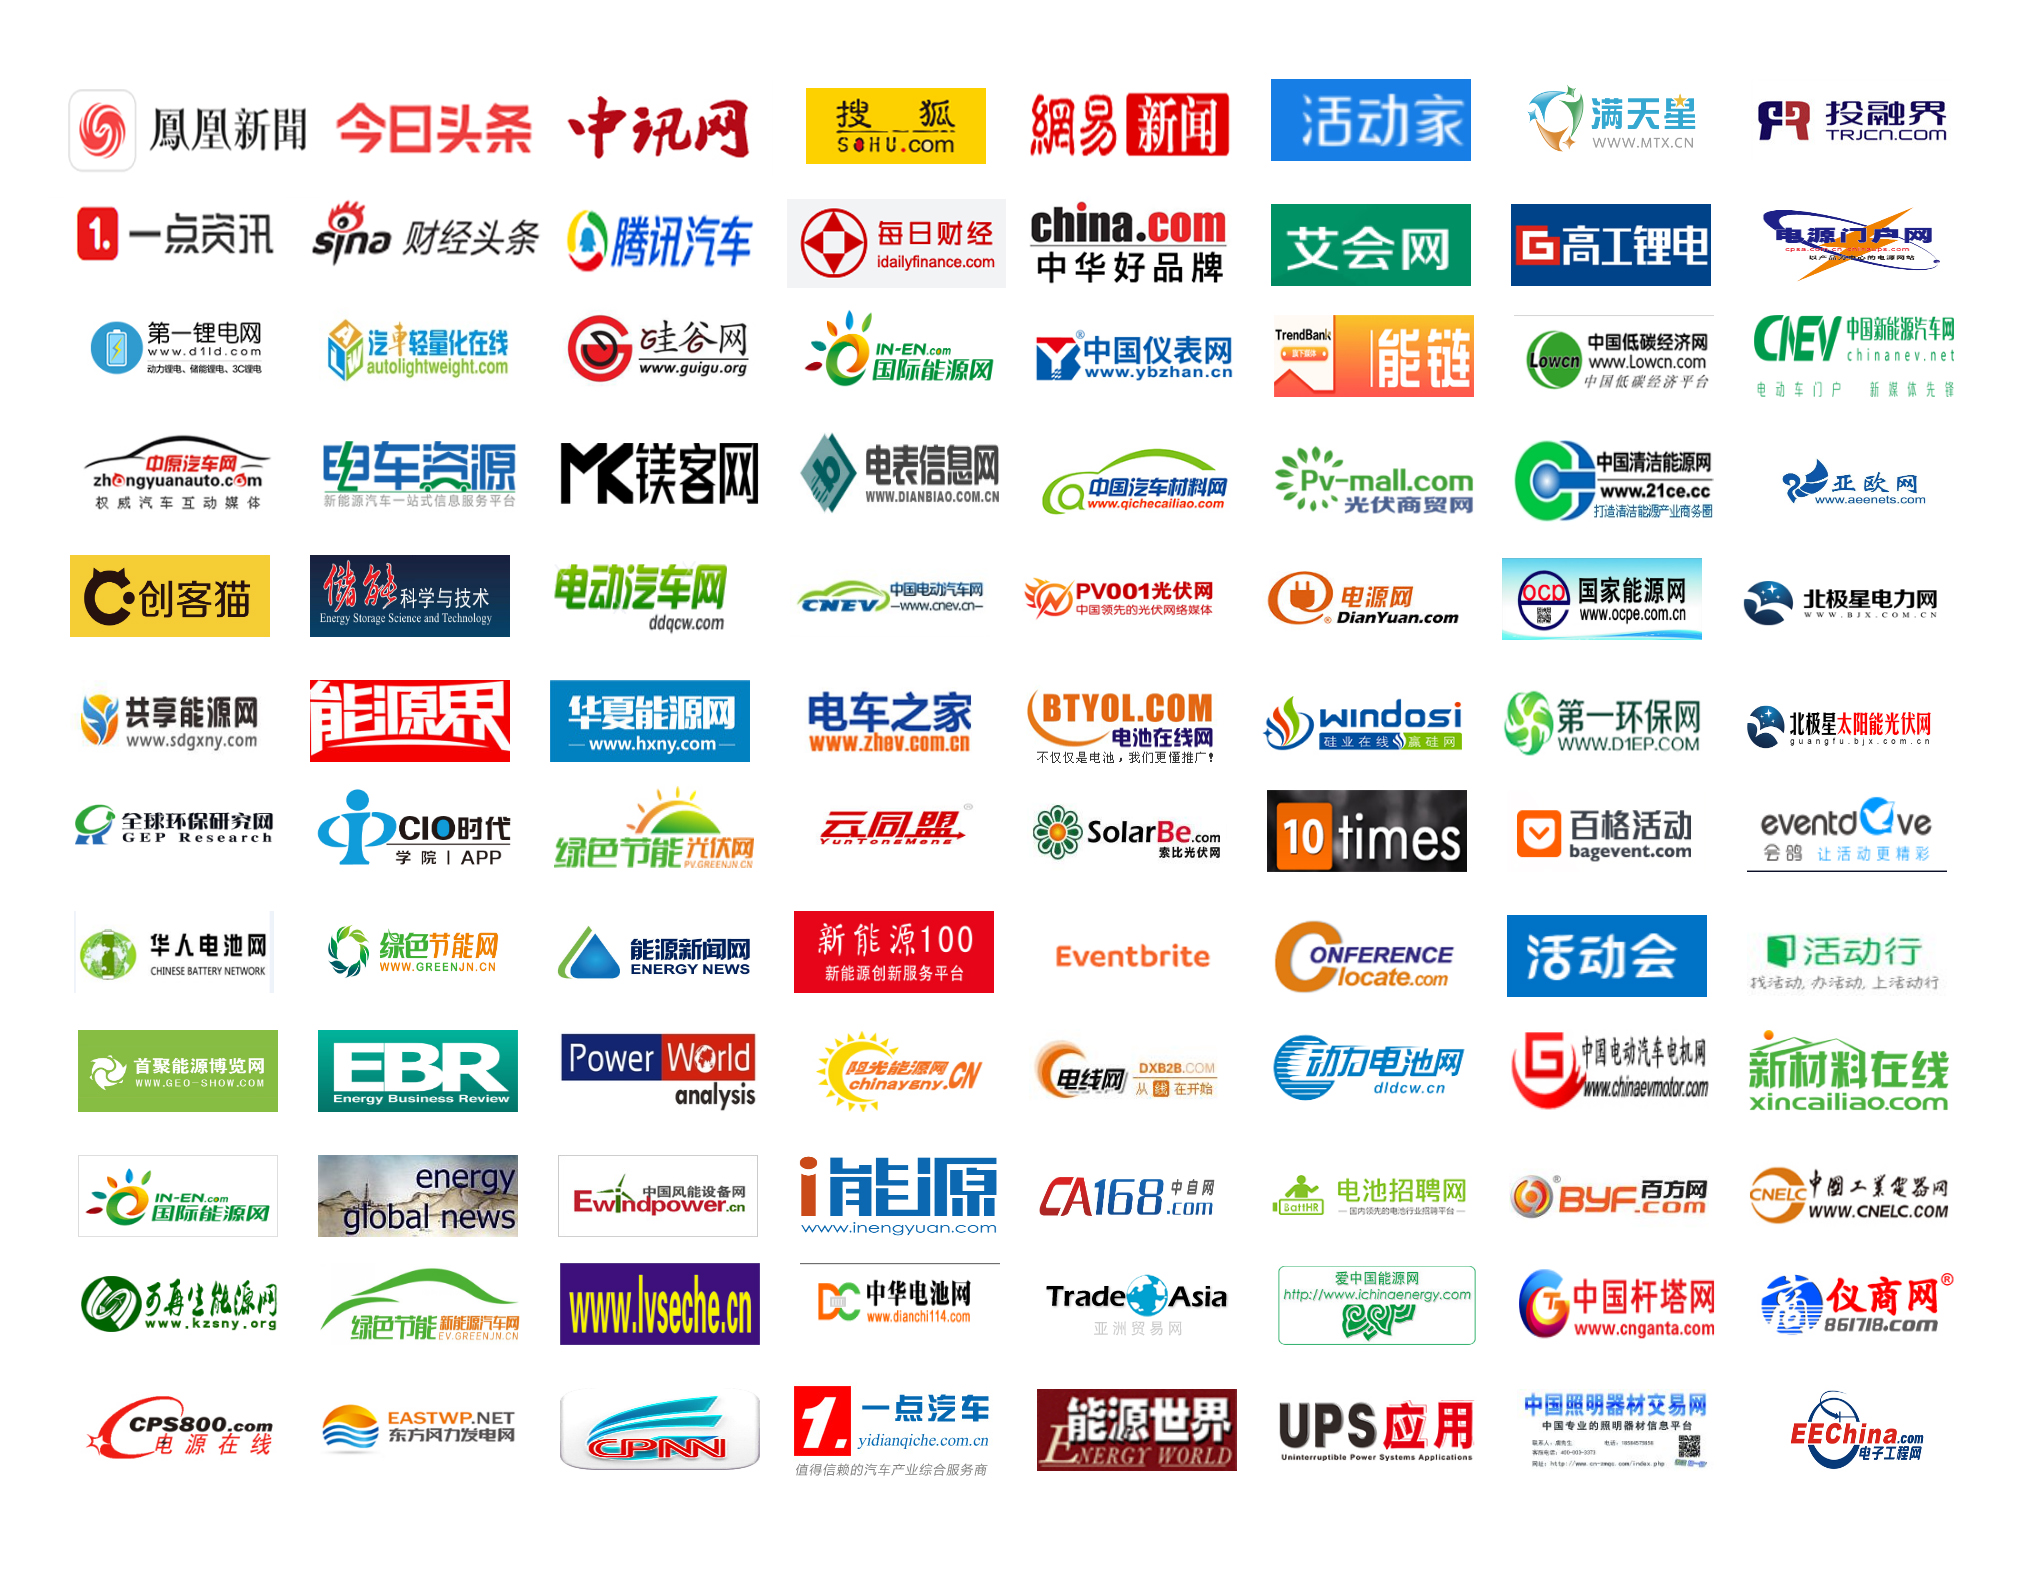 2019光伏产业创新与技术峰会（深圳）